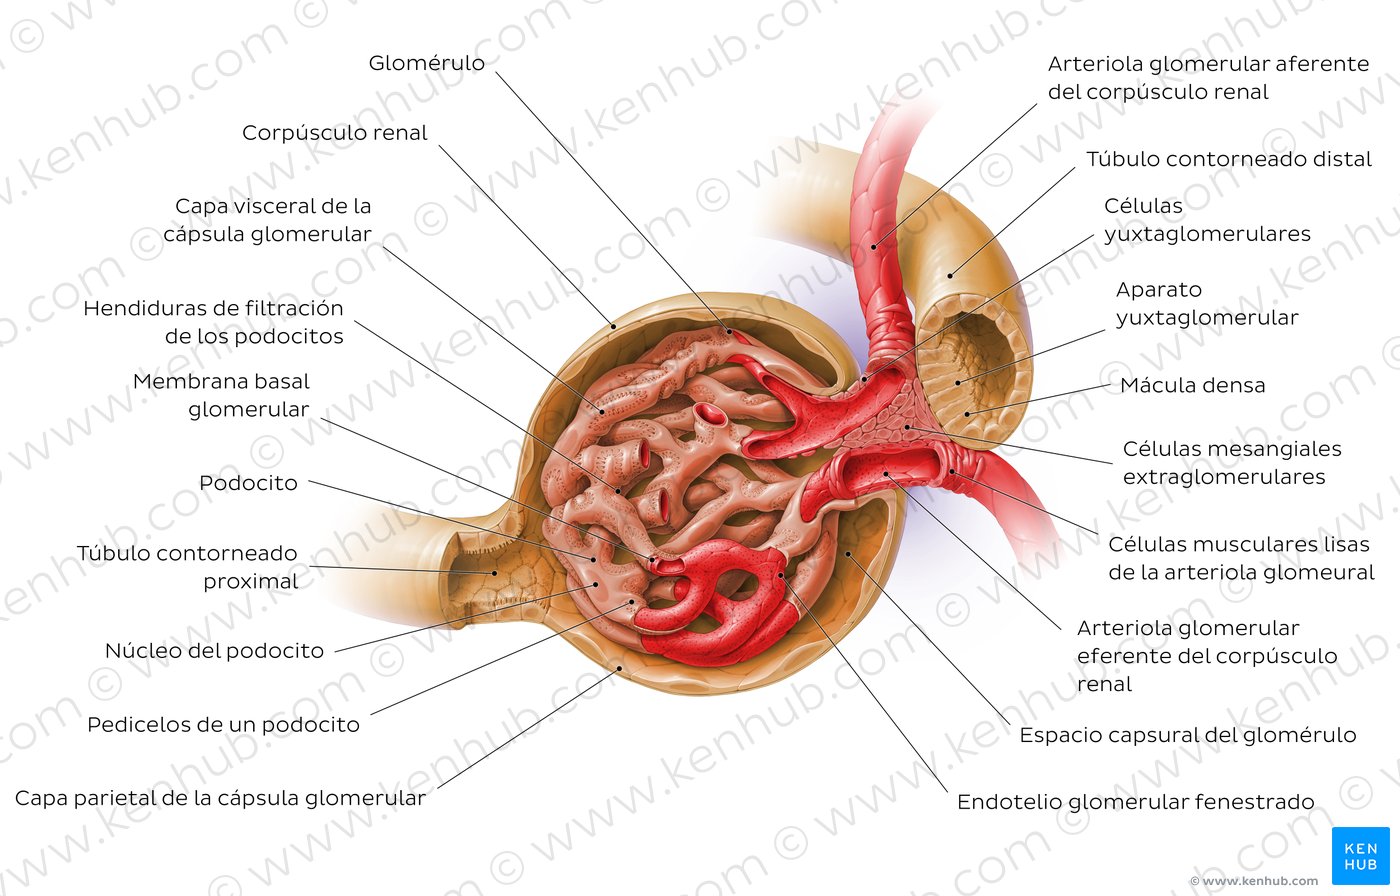 Riñones: Anatomía, función y estructura interna | Kenhub